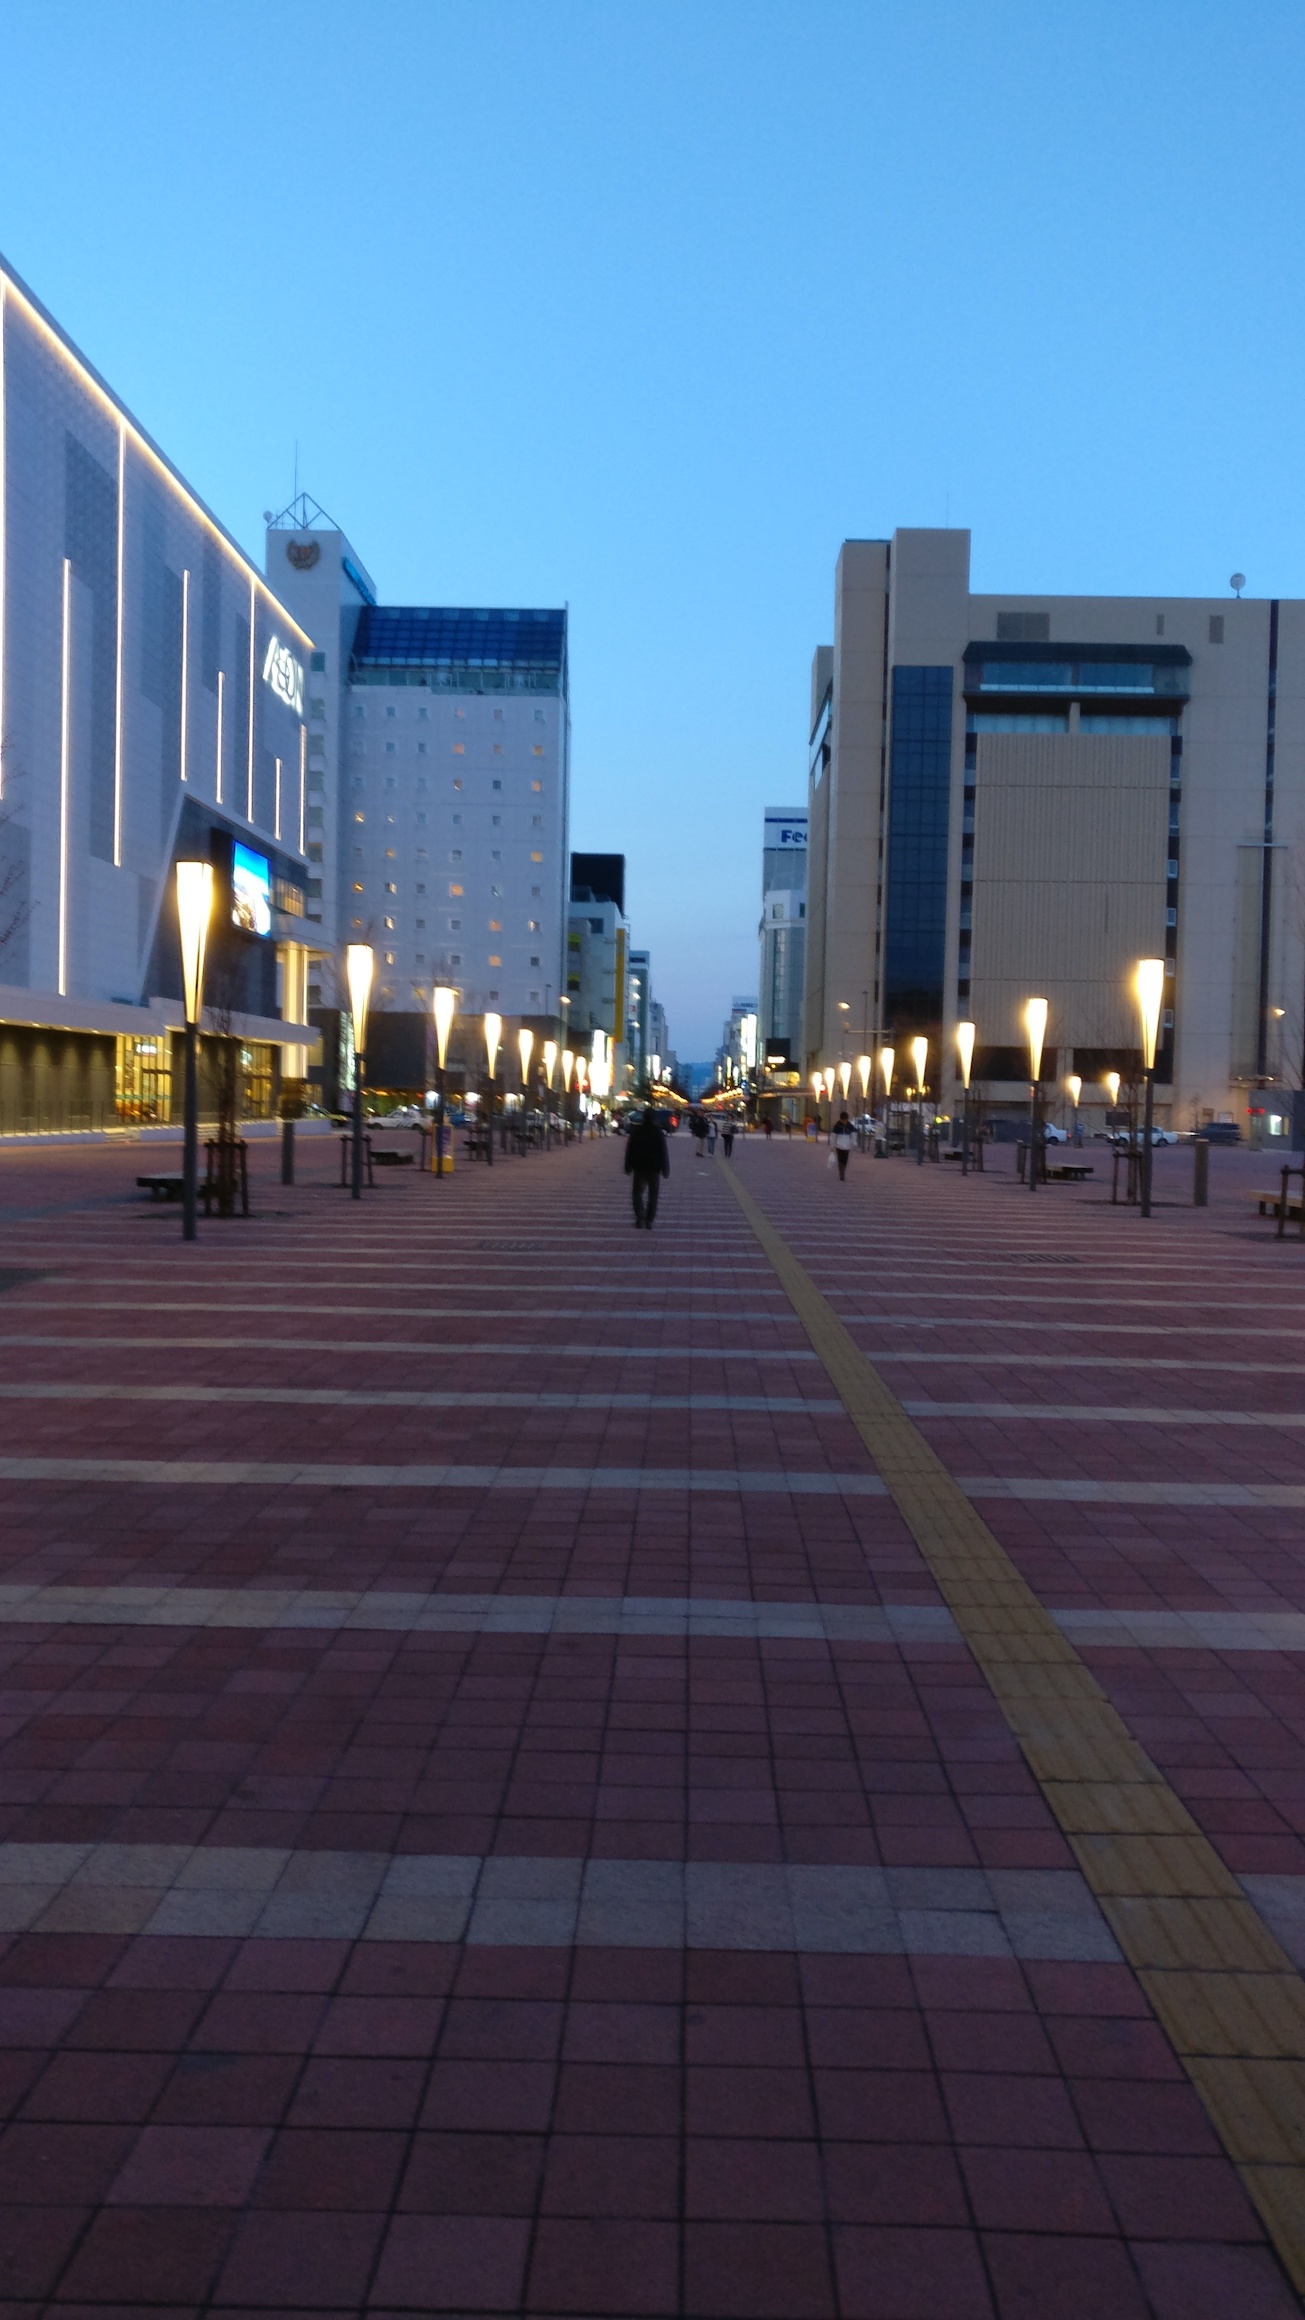 Outside Asahikawa Station